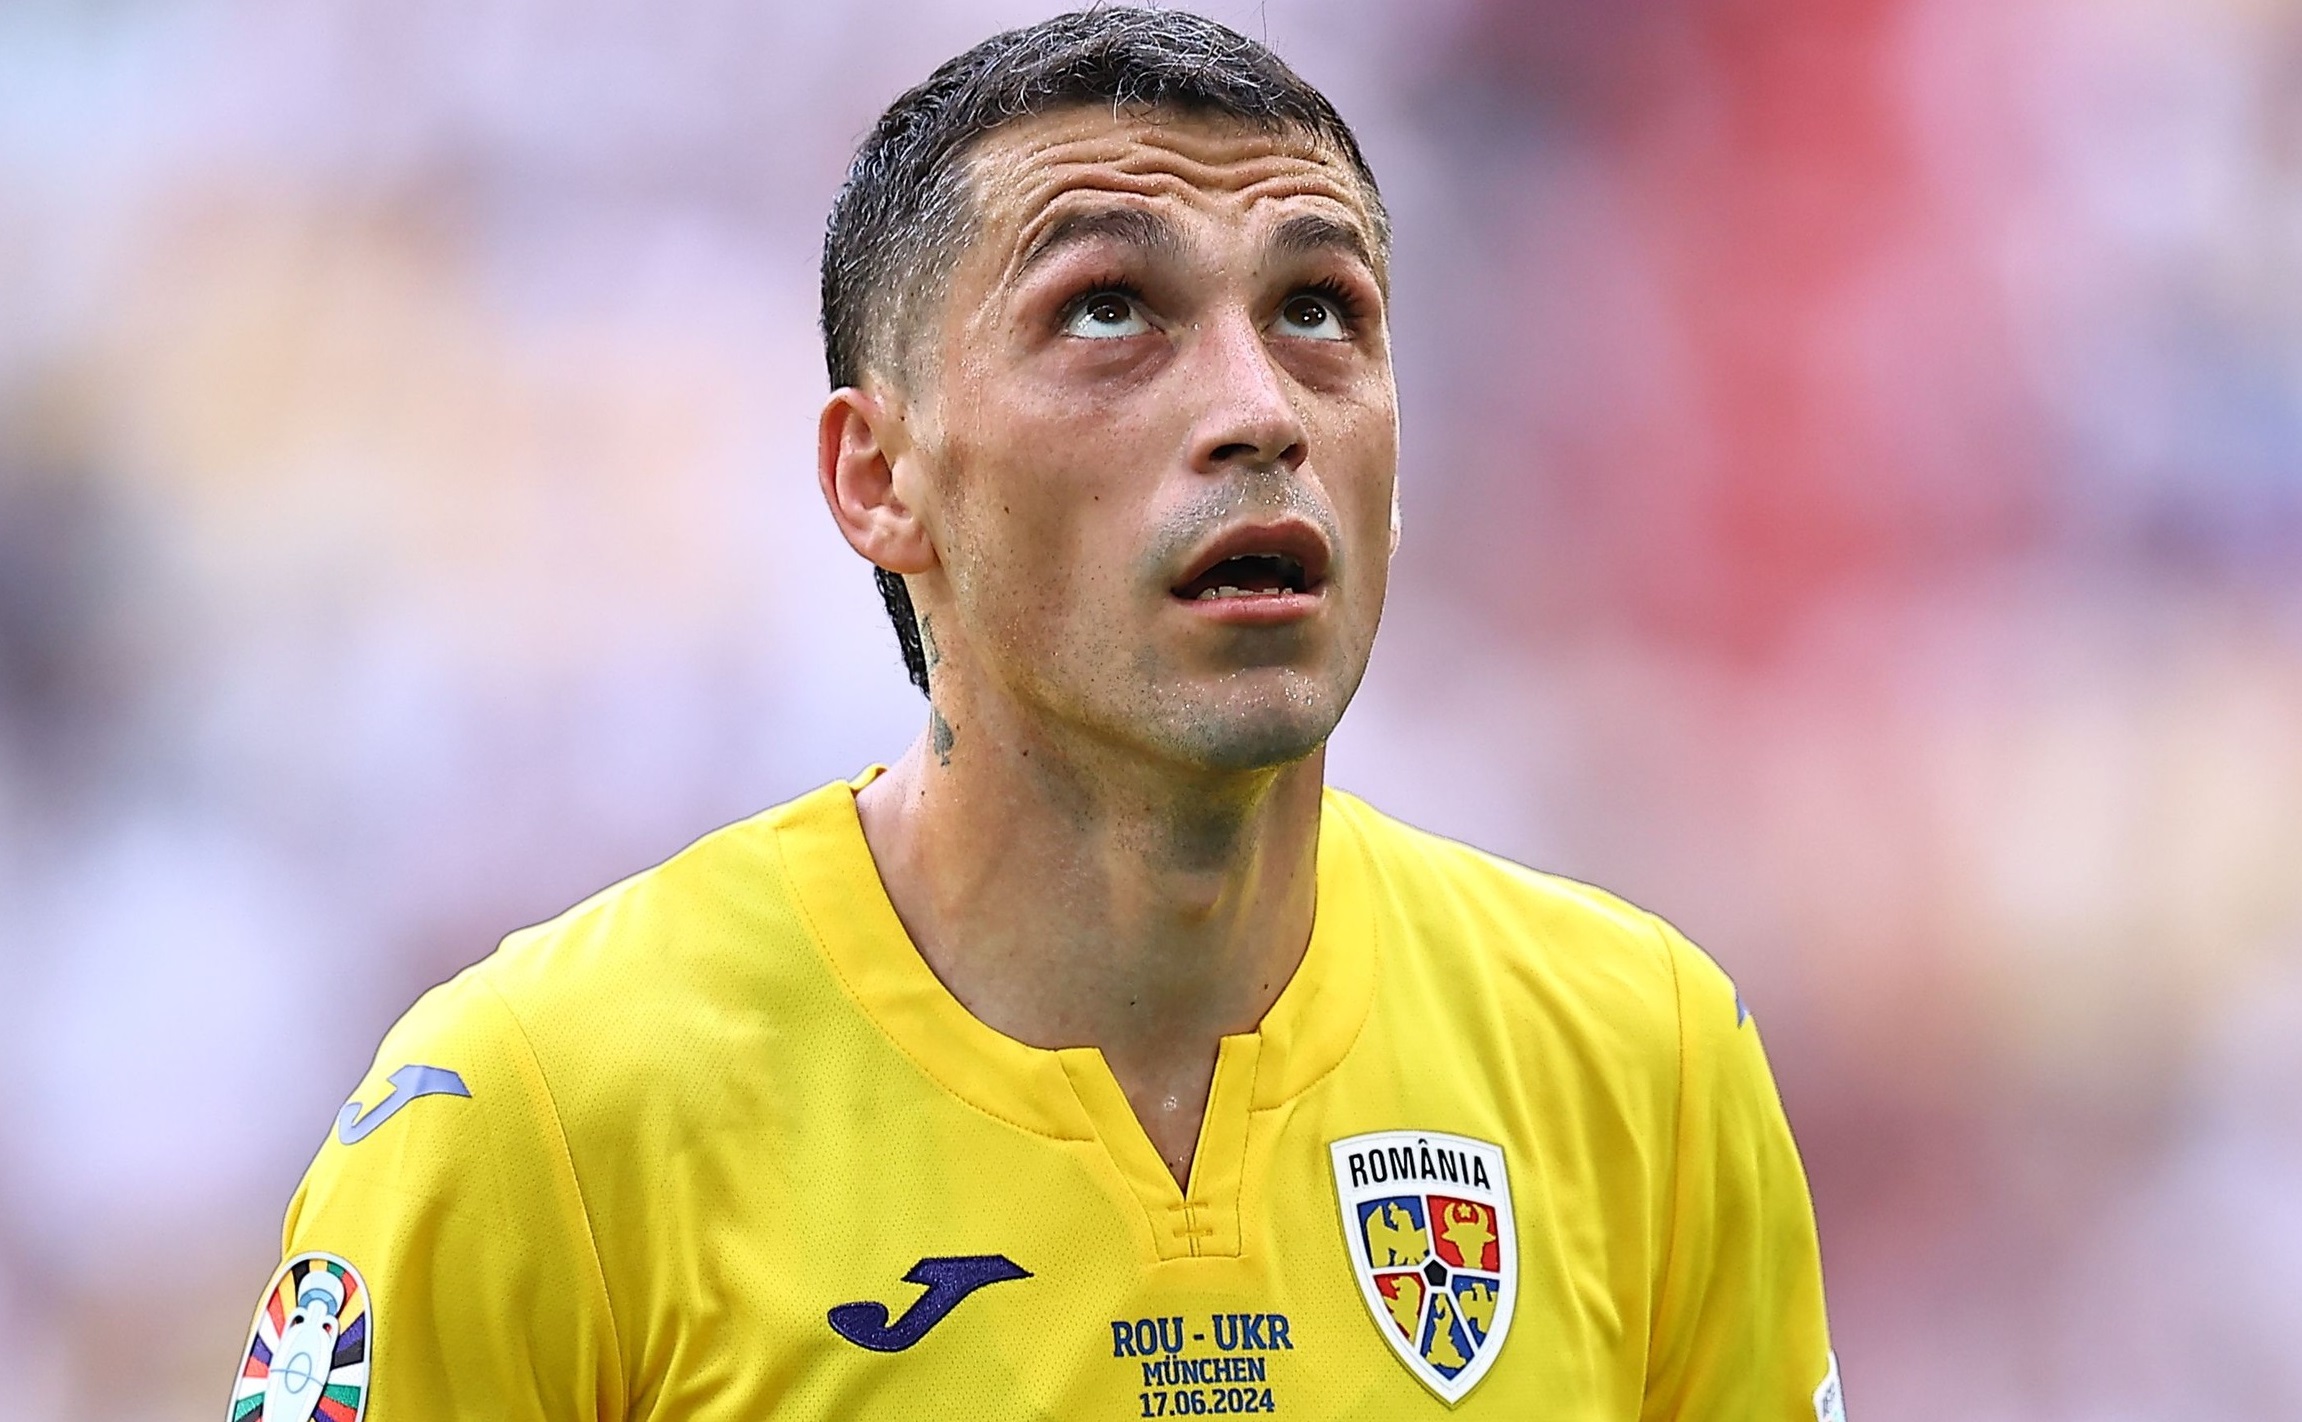 UEFA a rezumat în doar 5 cuvinte ce s-a întâmplat la România - Ucraina